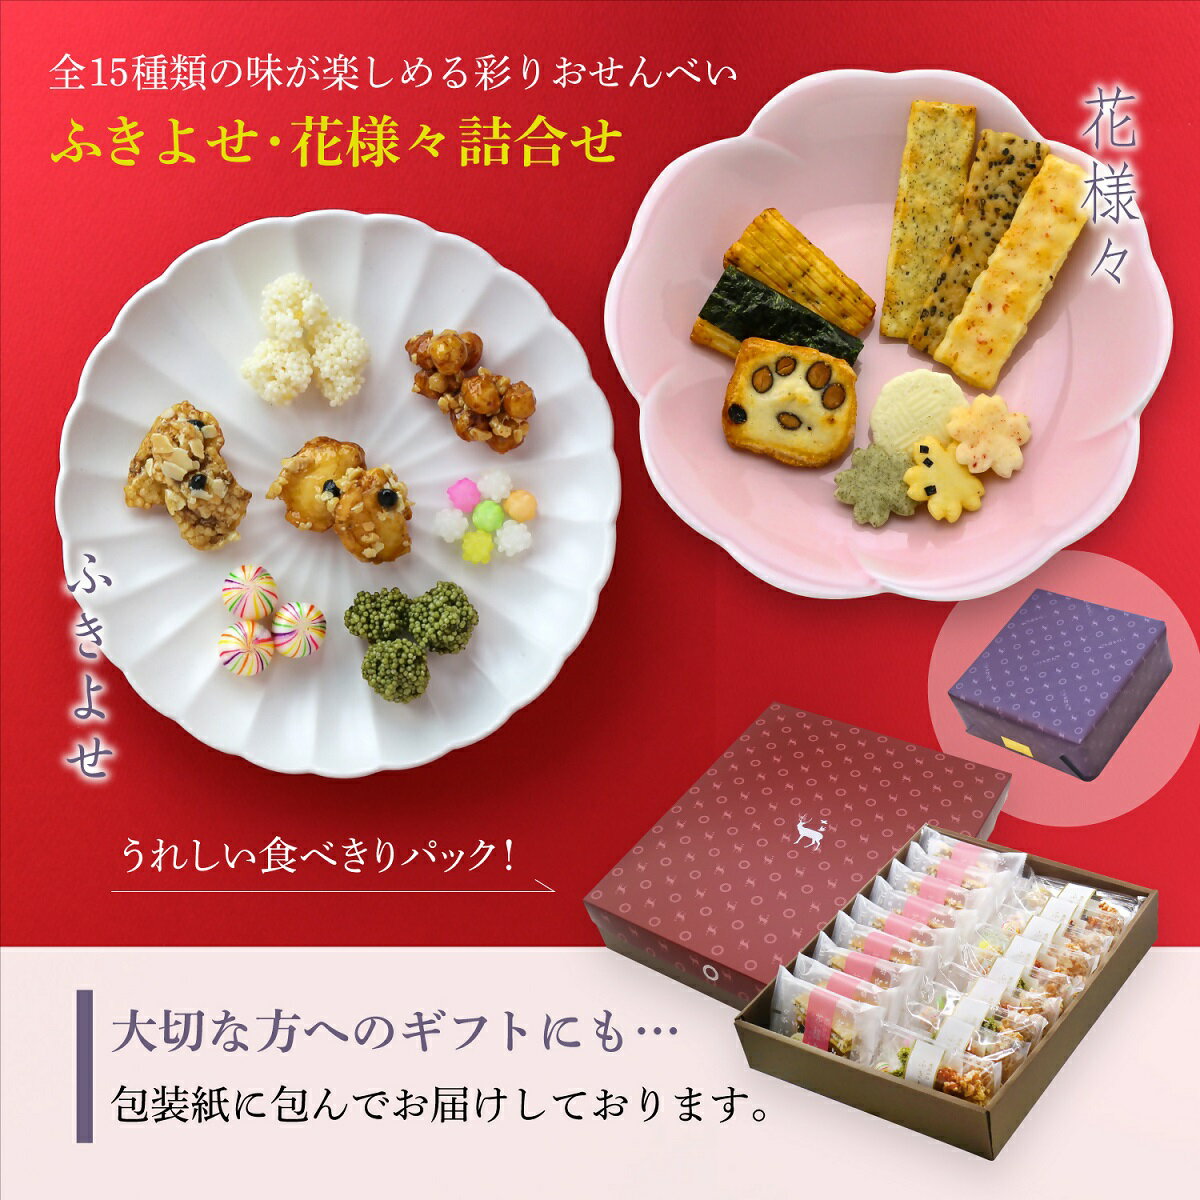 美鹿山荘 ギフト かわいい あられ・おかきと京都伝統菓子彩り鮮やかなふきよせのセット 化粧箱入り 熨斗可